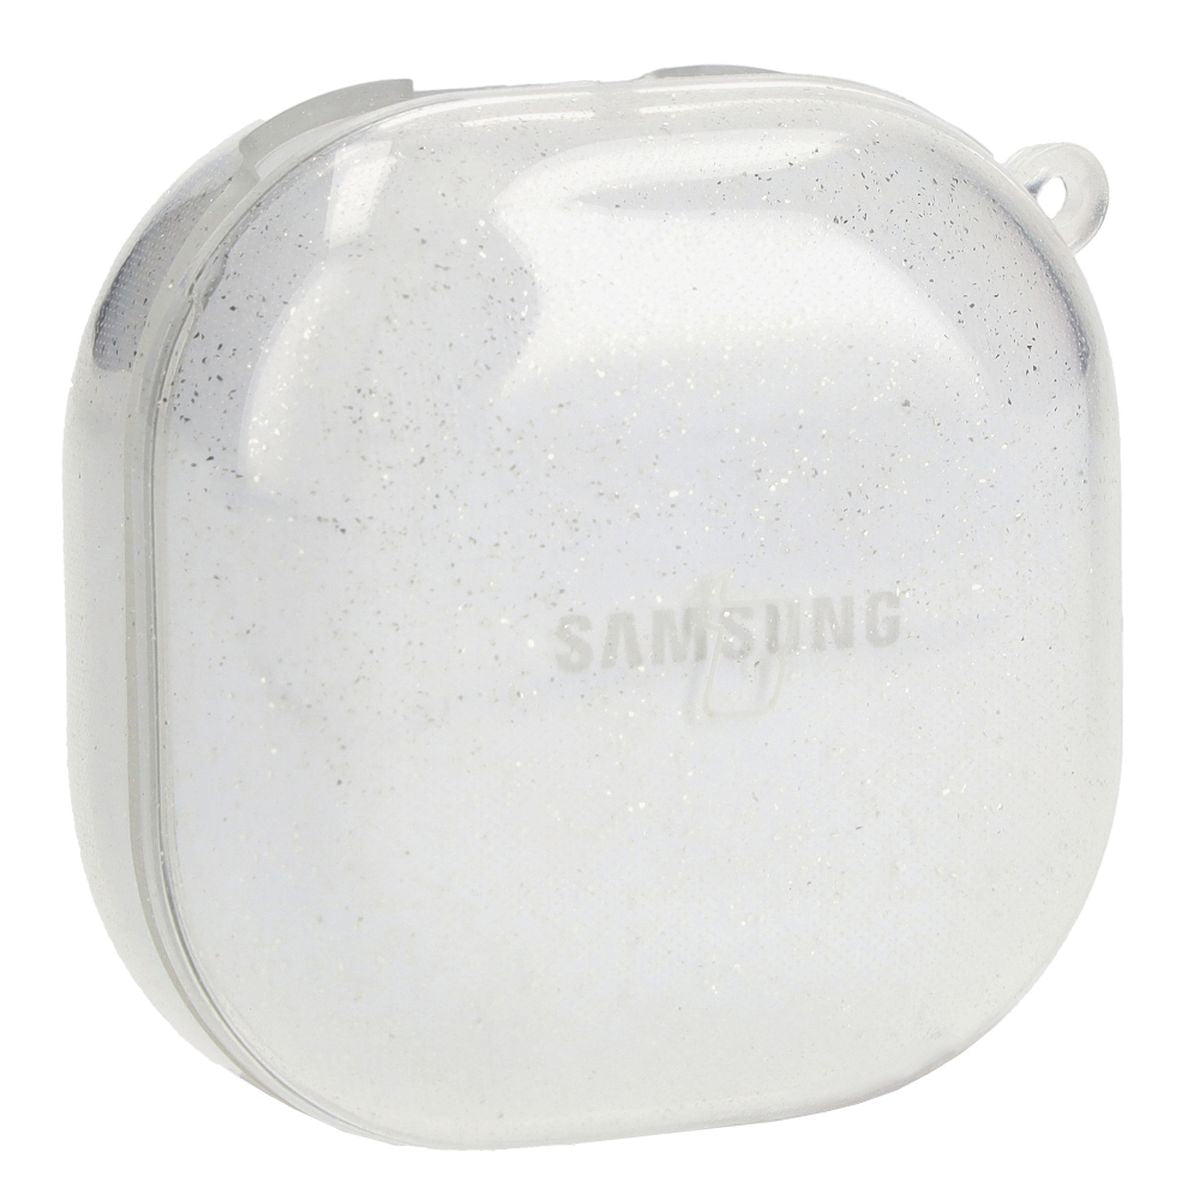 Schutzhülle für Samsung Galaxy Buds Live / Pro / Buds2 / Buds2 Pro / Buds FE. Bizon Case Headphone Clear, Transparent und glitzernd